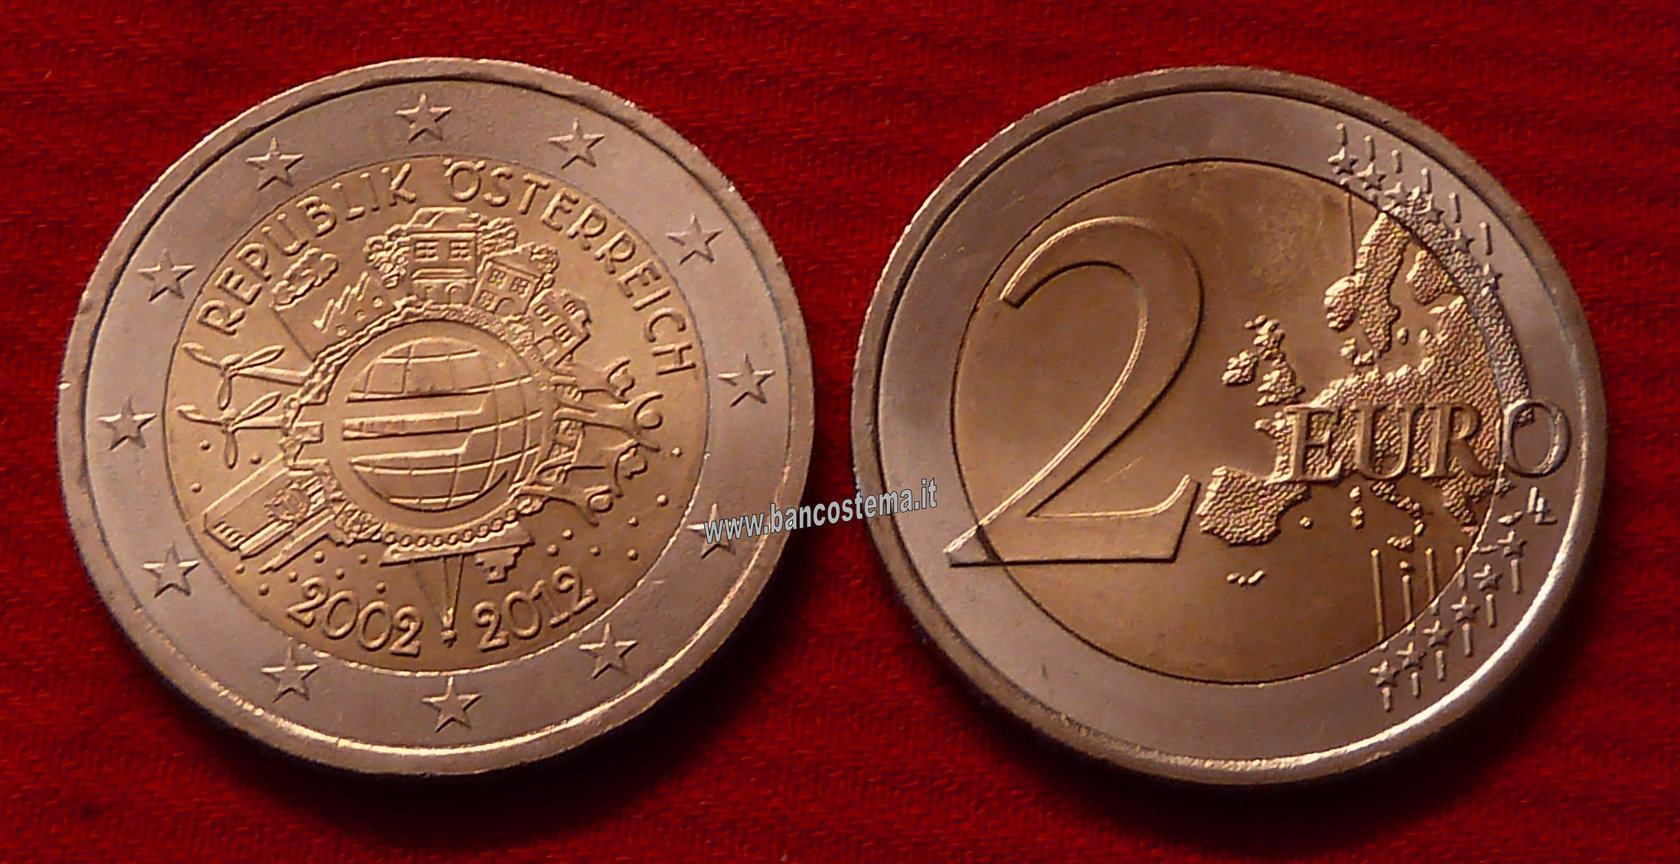 Austria 2 euro 2012 commemorativo 10° anniversario dell'euro fdc